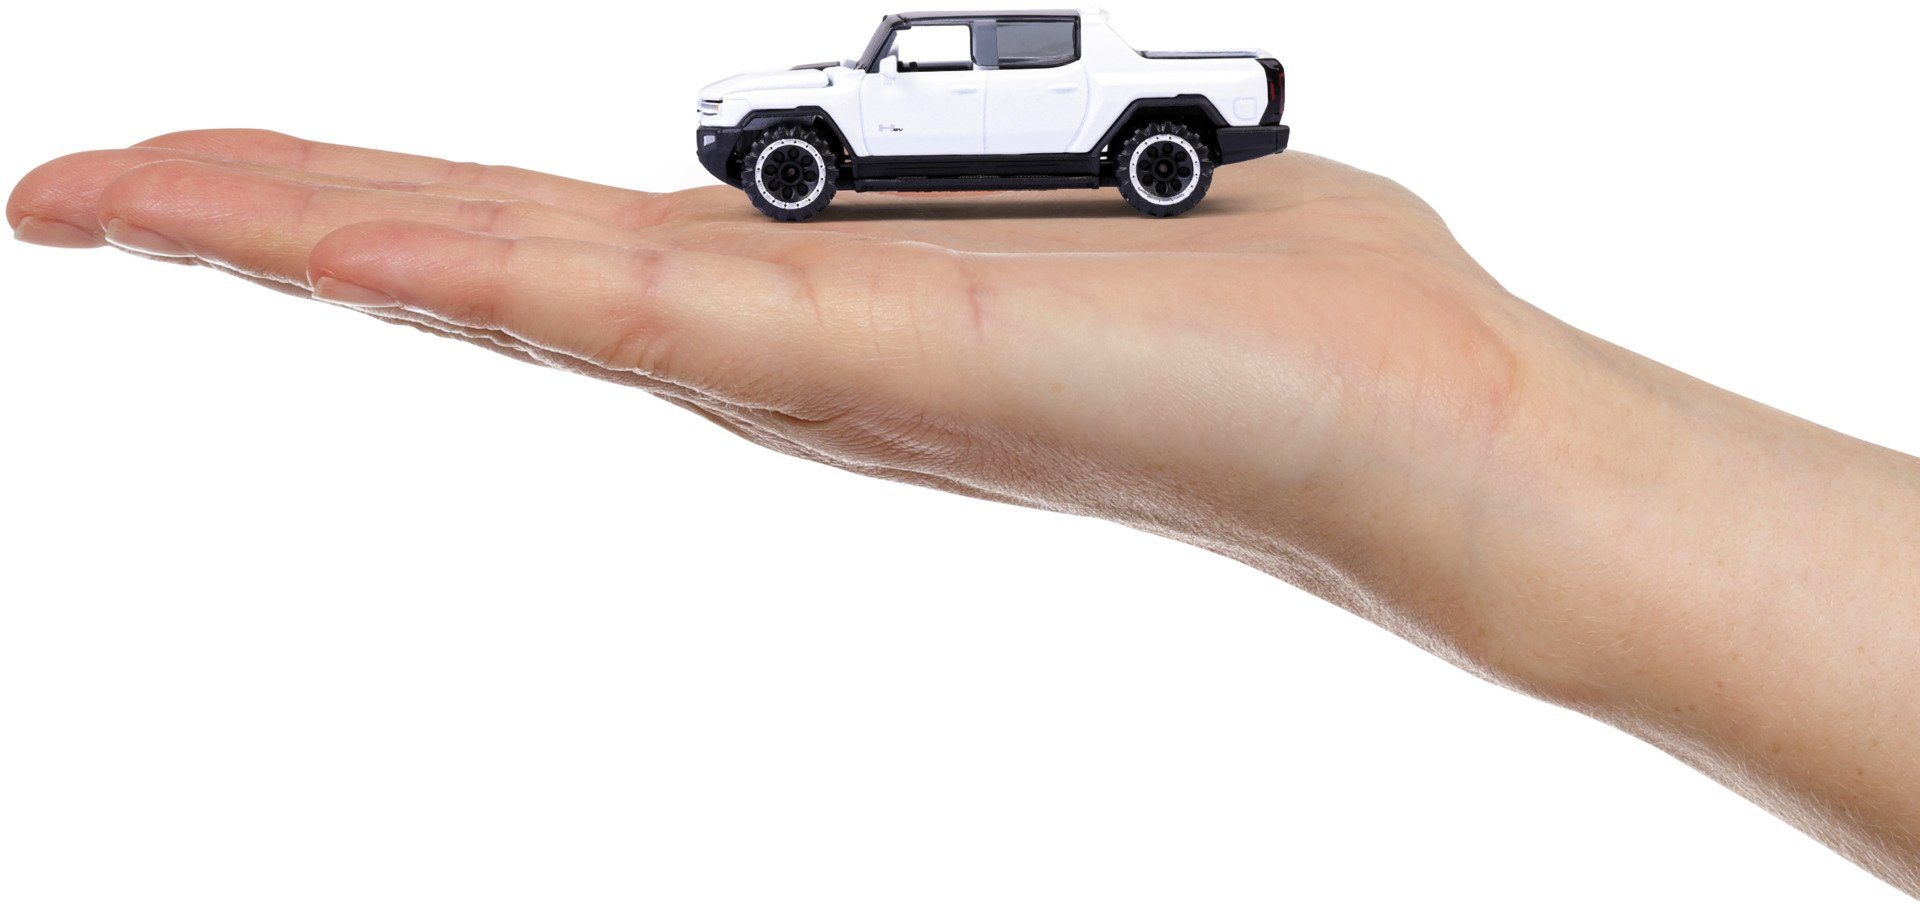 Spielzeugauto majORETTE GMC weiß Premium Cars Spielzeug-Auto 212053052Q37 EV Hummer